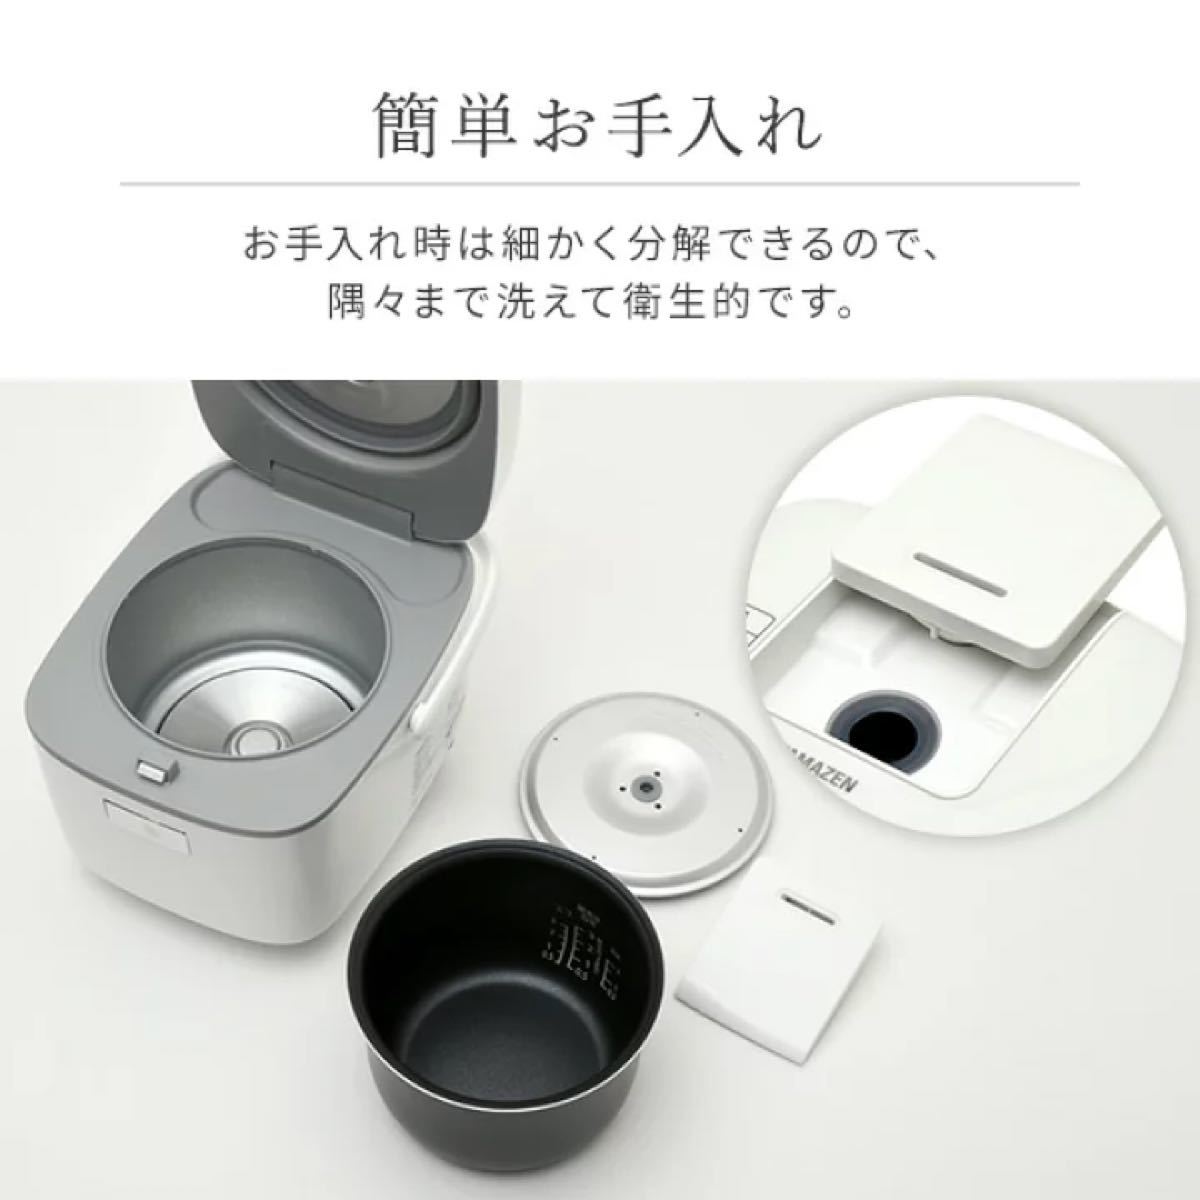 【未使用】【山善]】炊飯器 3合 マイコン式 6種類炊き分け機能 予約 保温 玄米 ホワイト YJC-300(W)